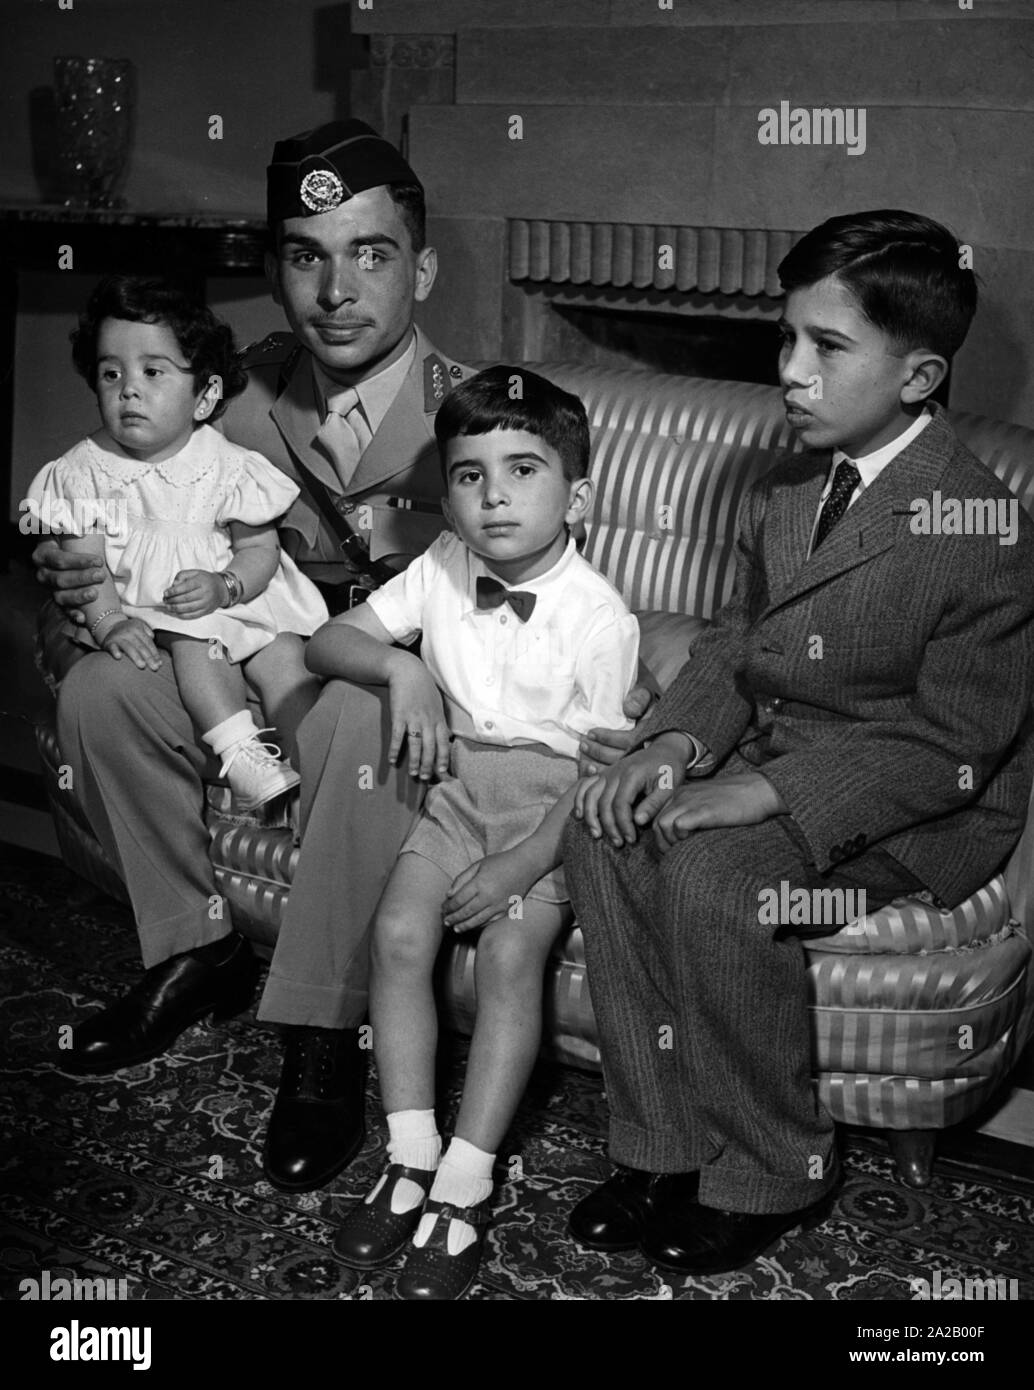 Le Roi de Jordanie, Hussein bin Talal, dans le Basman Palace à Amman / Jordanie, avec ses frères et sœurs. De gauche à droite : La Princesse Basma, le roi Hussein I, le Prince Hassan et du Prince Mohammed. Banque D'Images